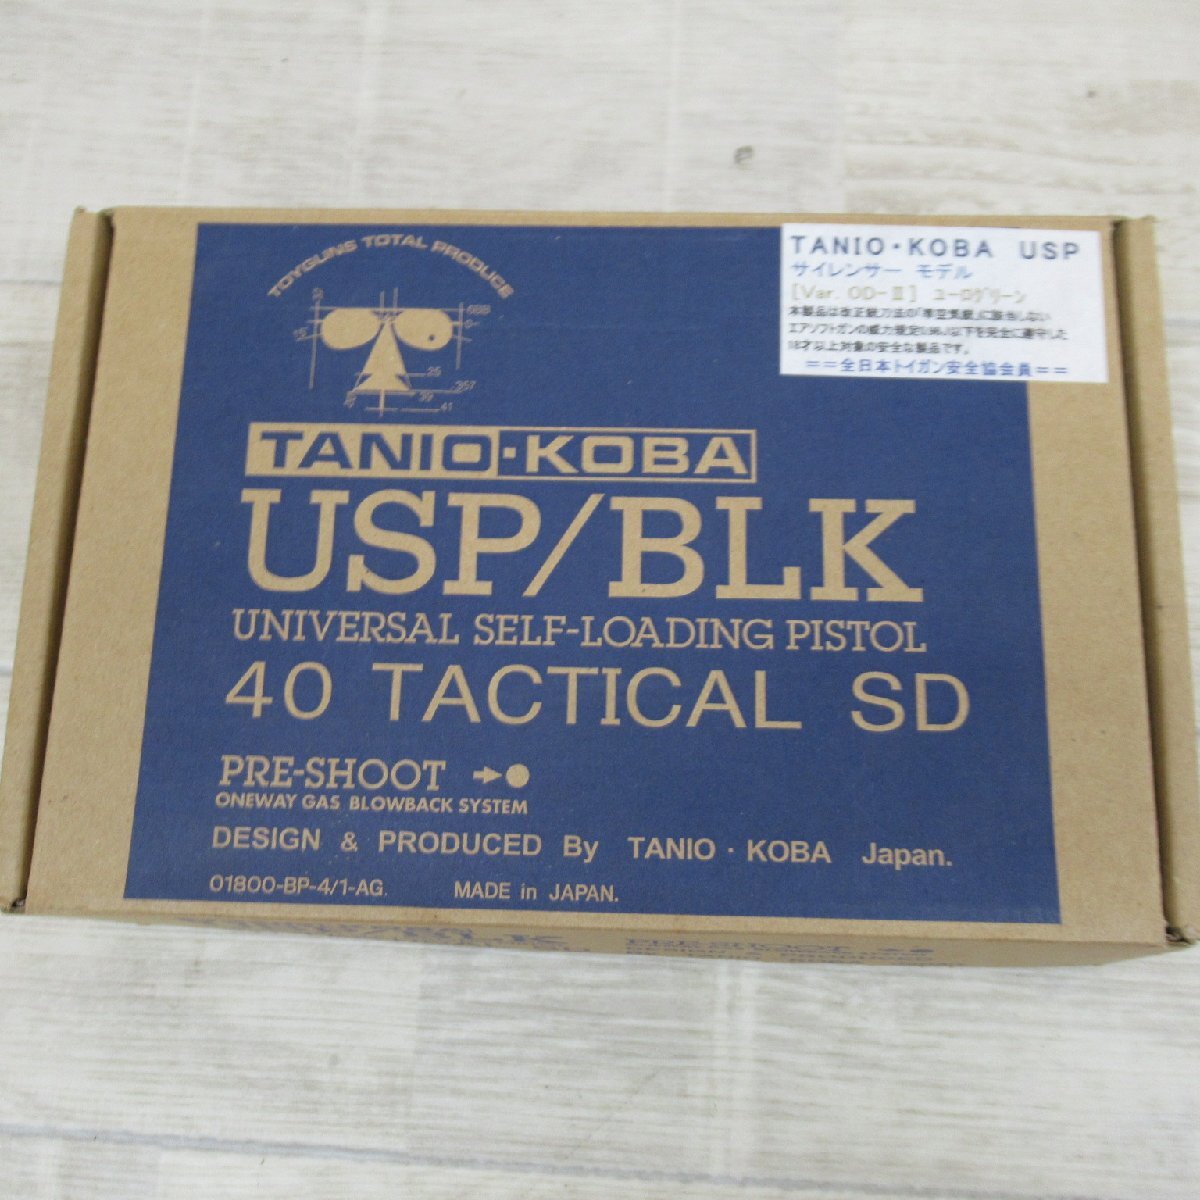 TC1118/TANIO KOBA USP/BLK サイレンサーモデル Ver OD-Ⅲ ユーログリーン 40 TACTICAL SD タニオ・コバ ブローバックサイレンサーの画像1